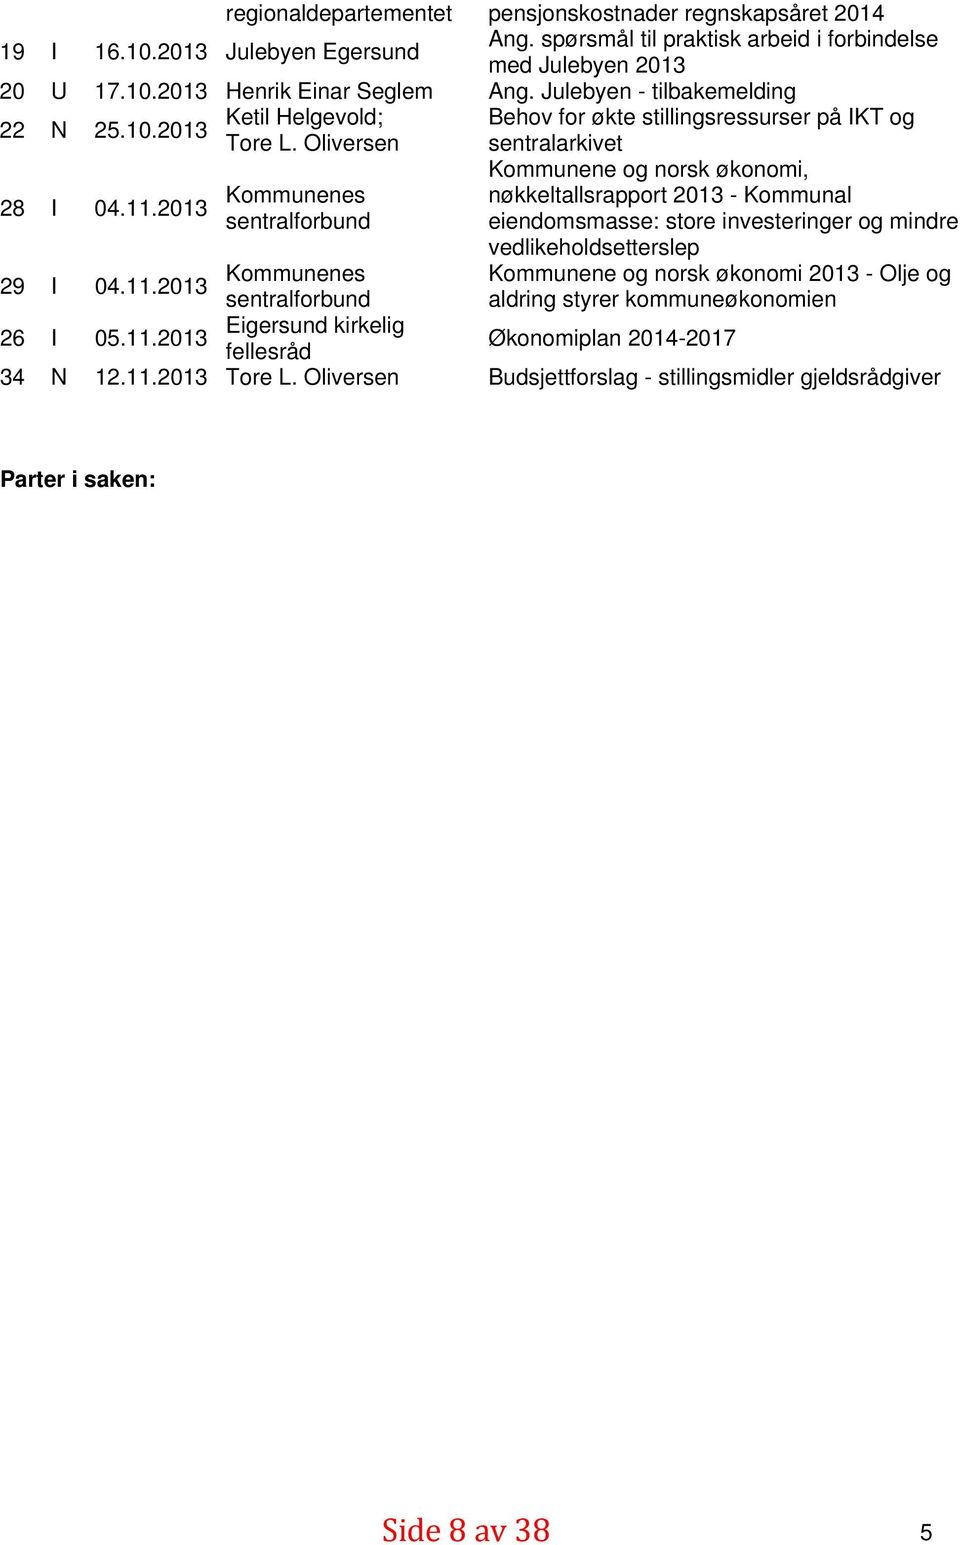 2013 Kommunene og norsk økonomi, vedlikeholdsetterslep Kommunenes nøkkeltallsrapport 2013 - Kommunal sentralforbund eiendomsmasse: store investeringer og mindre 29 I 04.11.